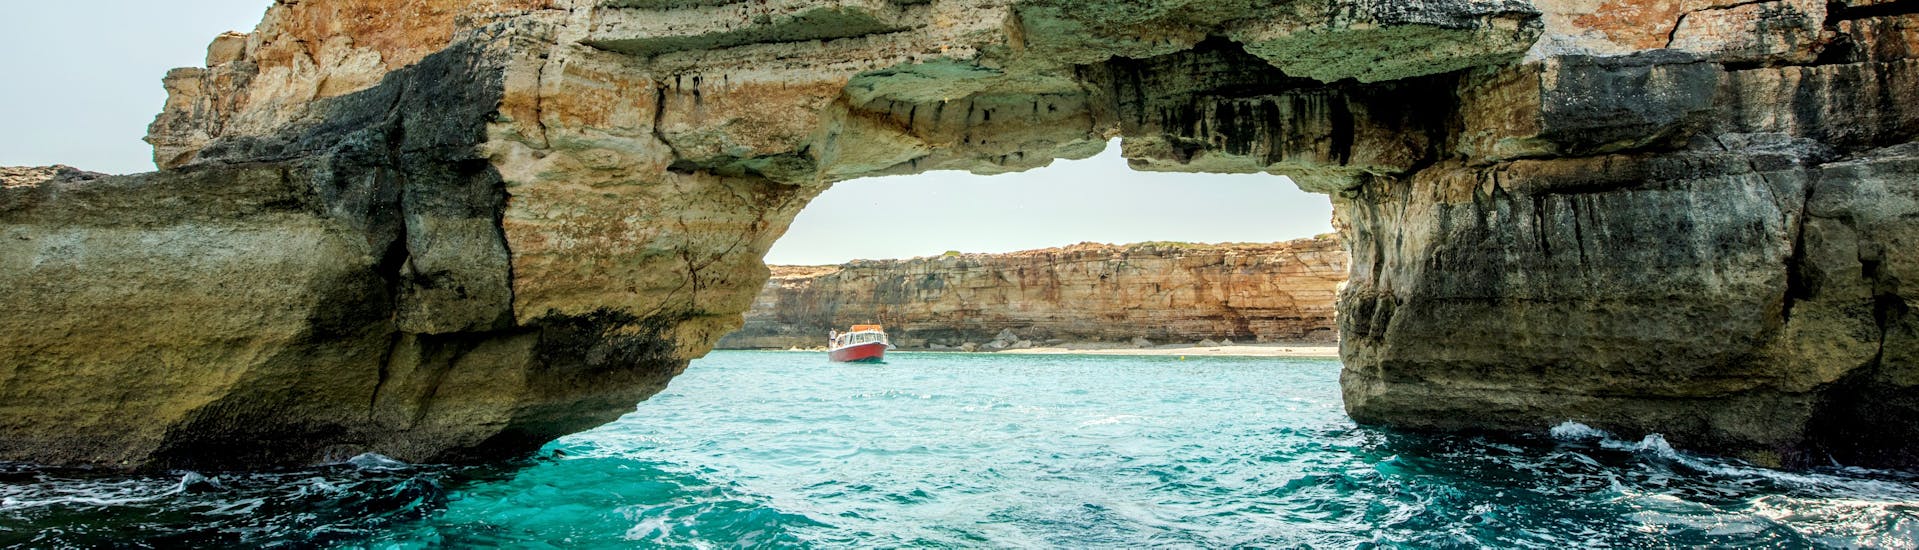 Bootstour von Rethymno zu den Piratenhöhlen auf Kreta.